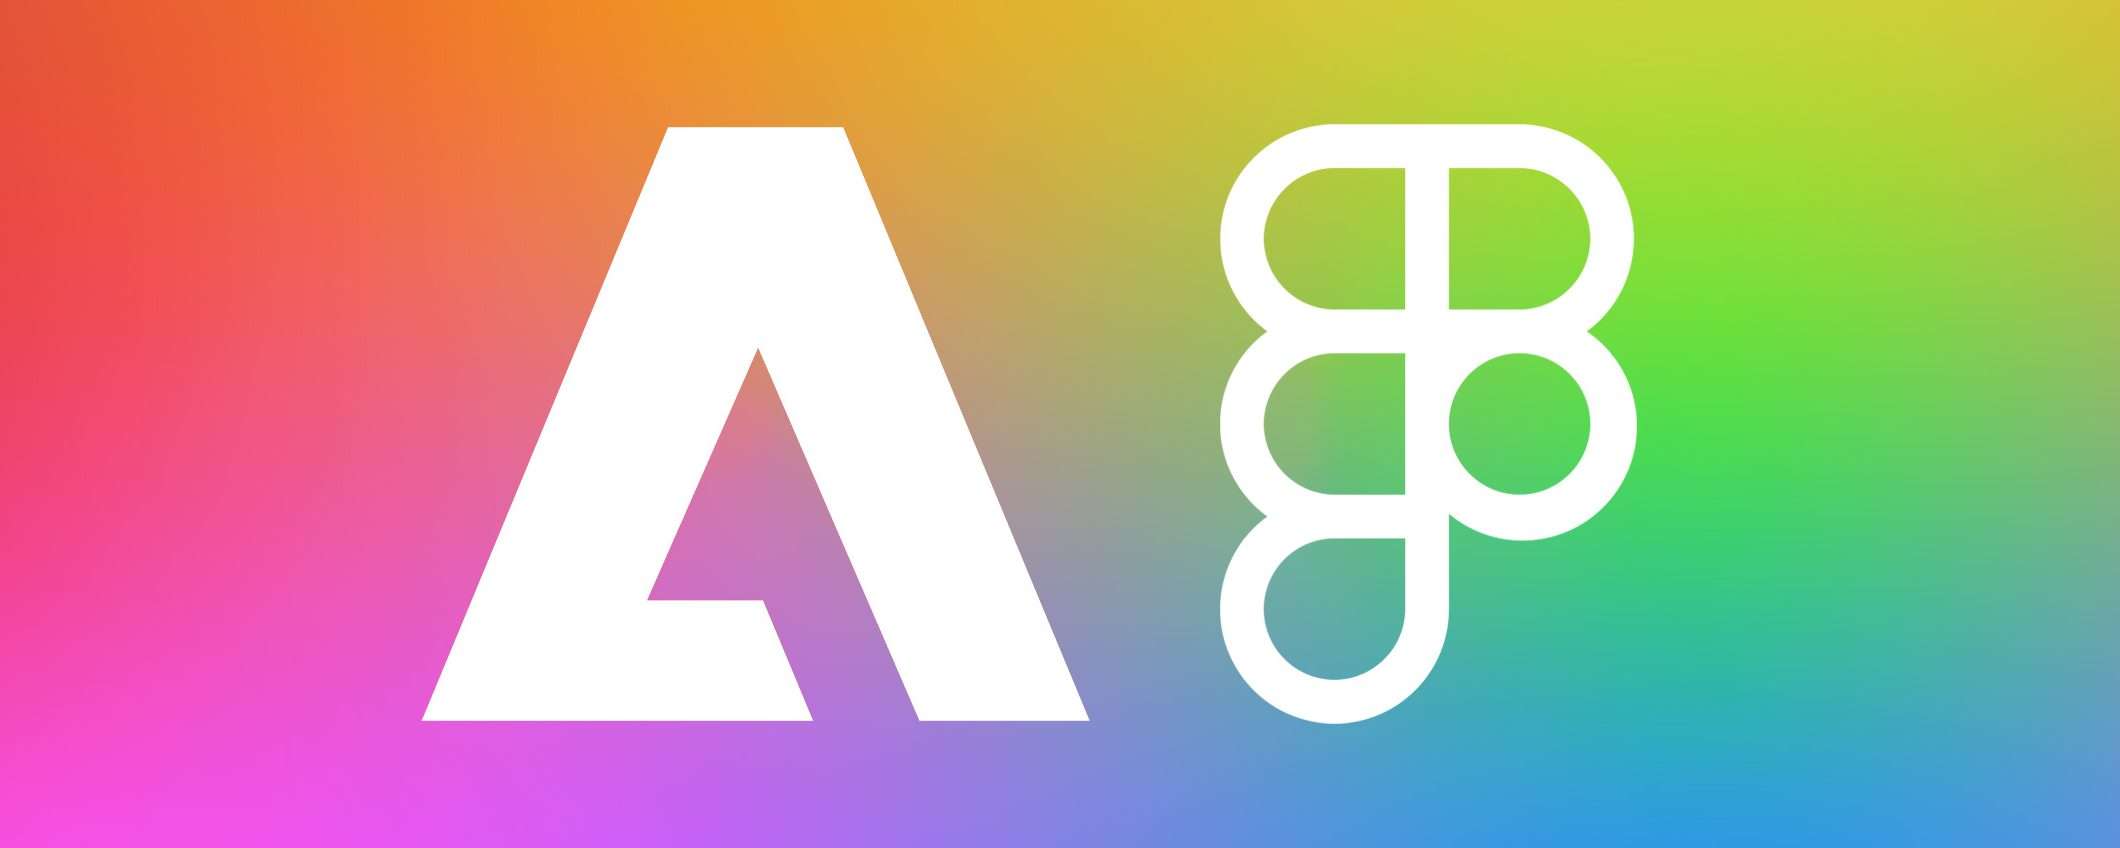 Adobe annuncia l'acquisizione di Figma